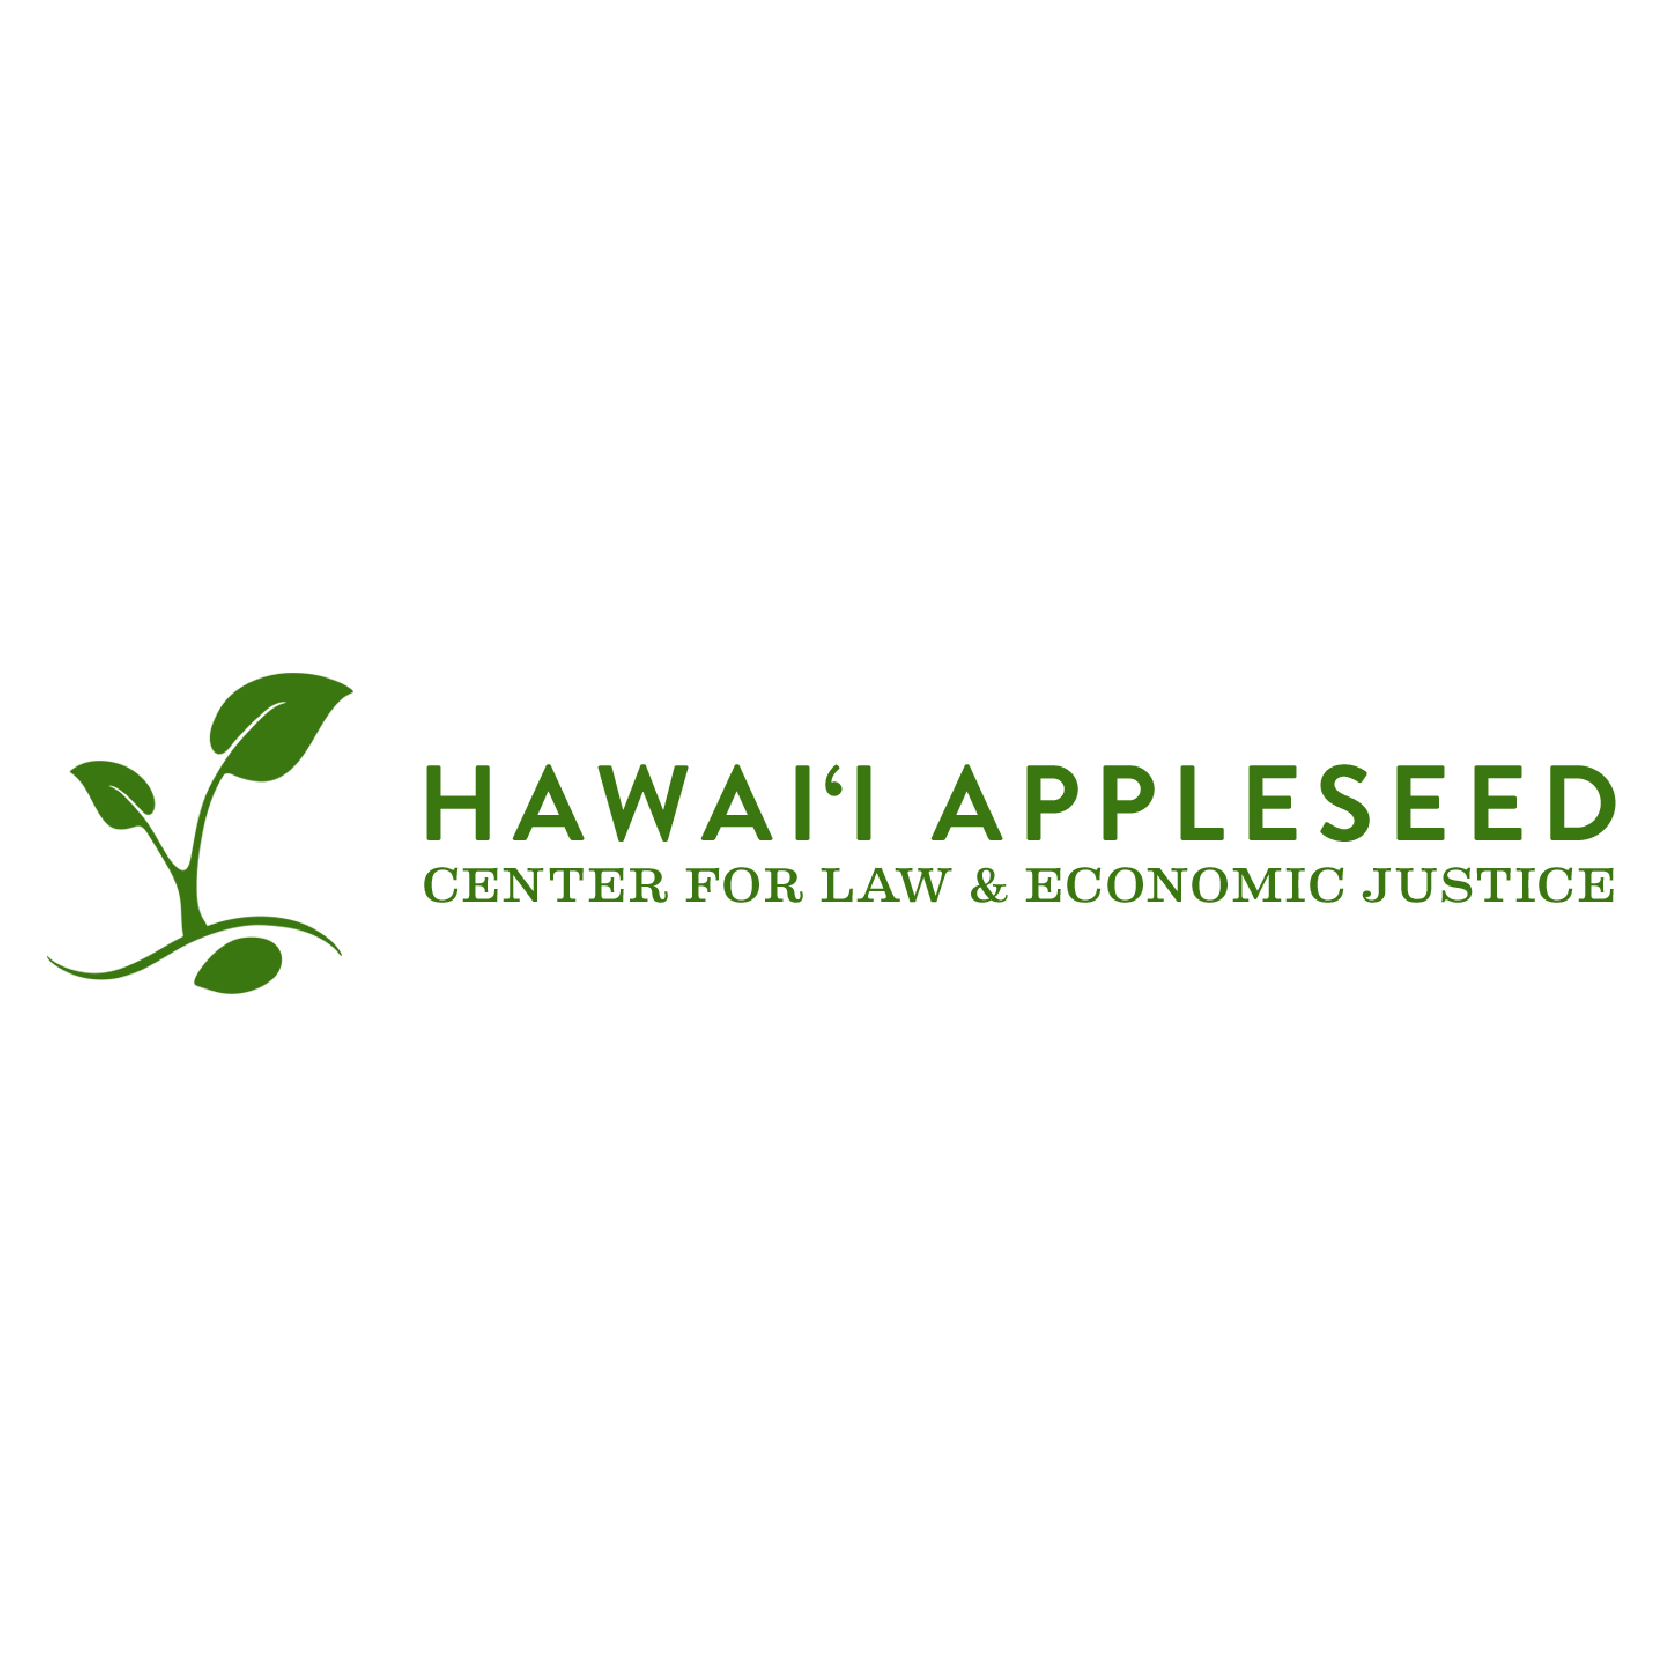 Hawaii Appleseed